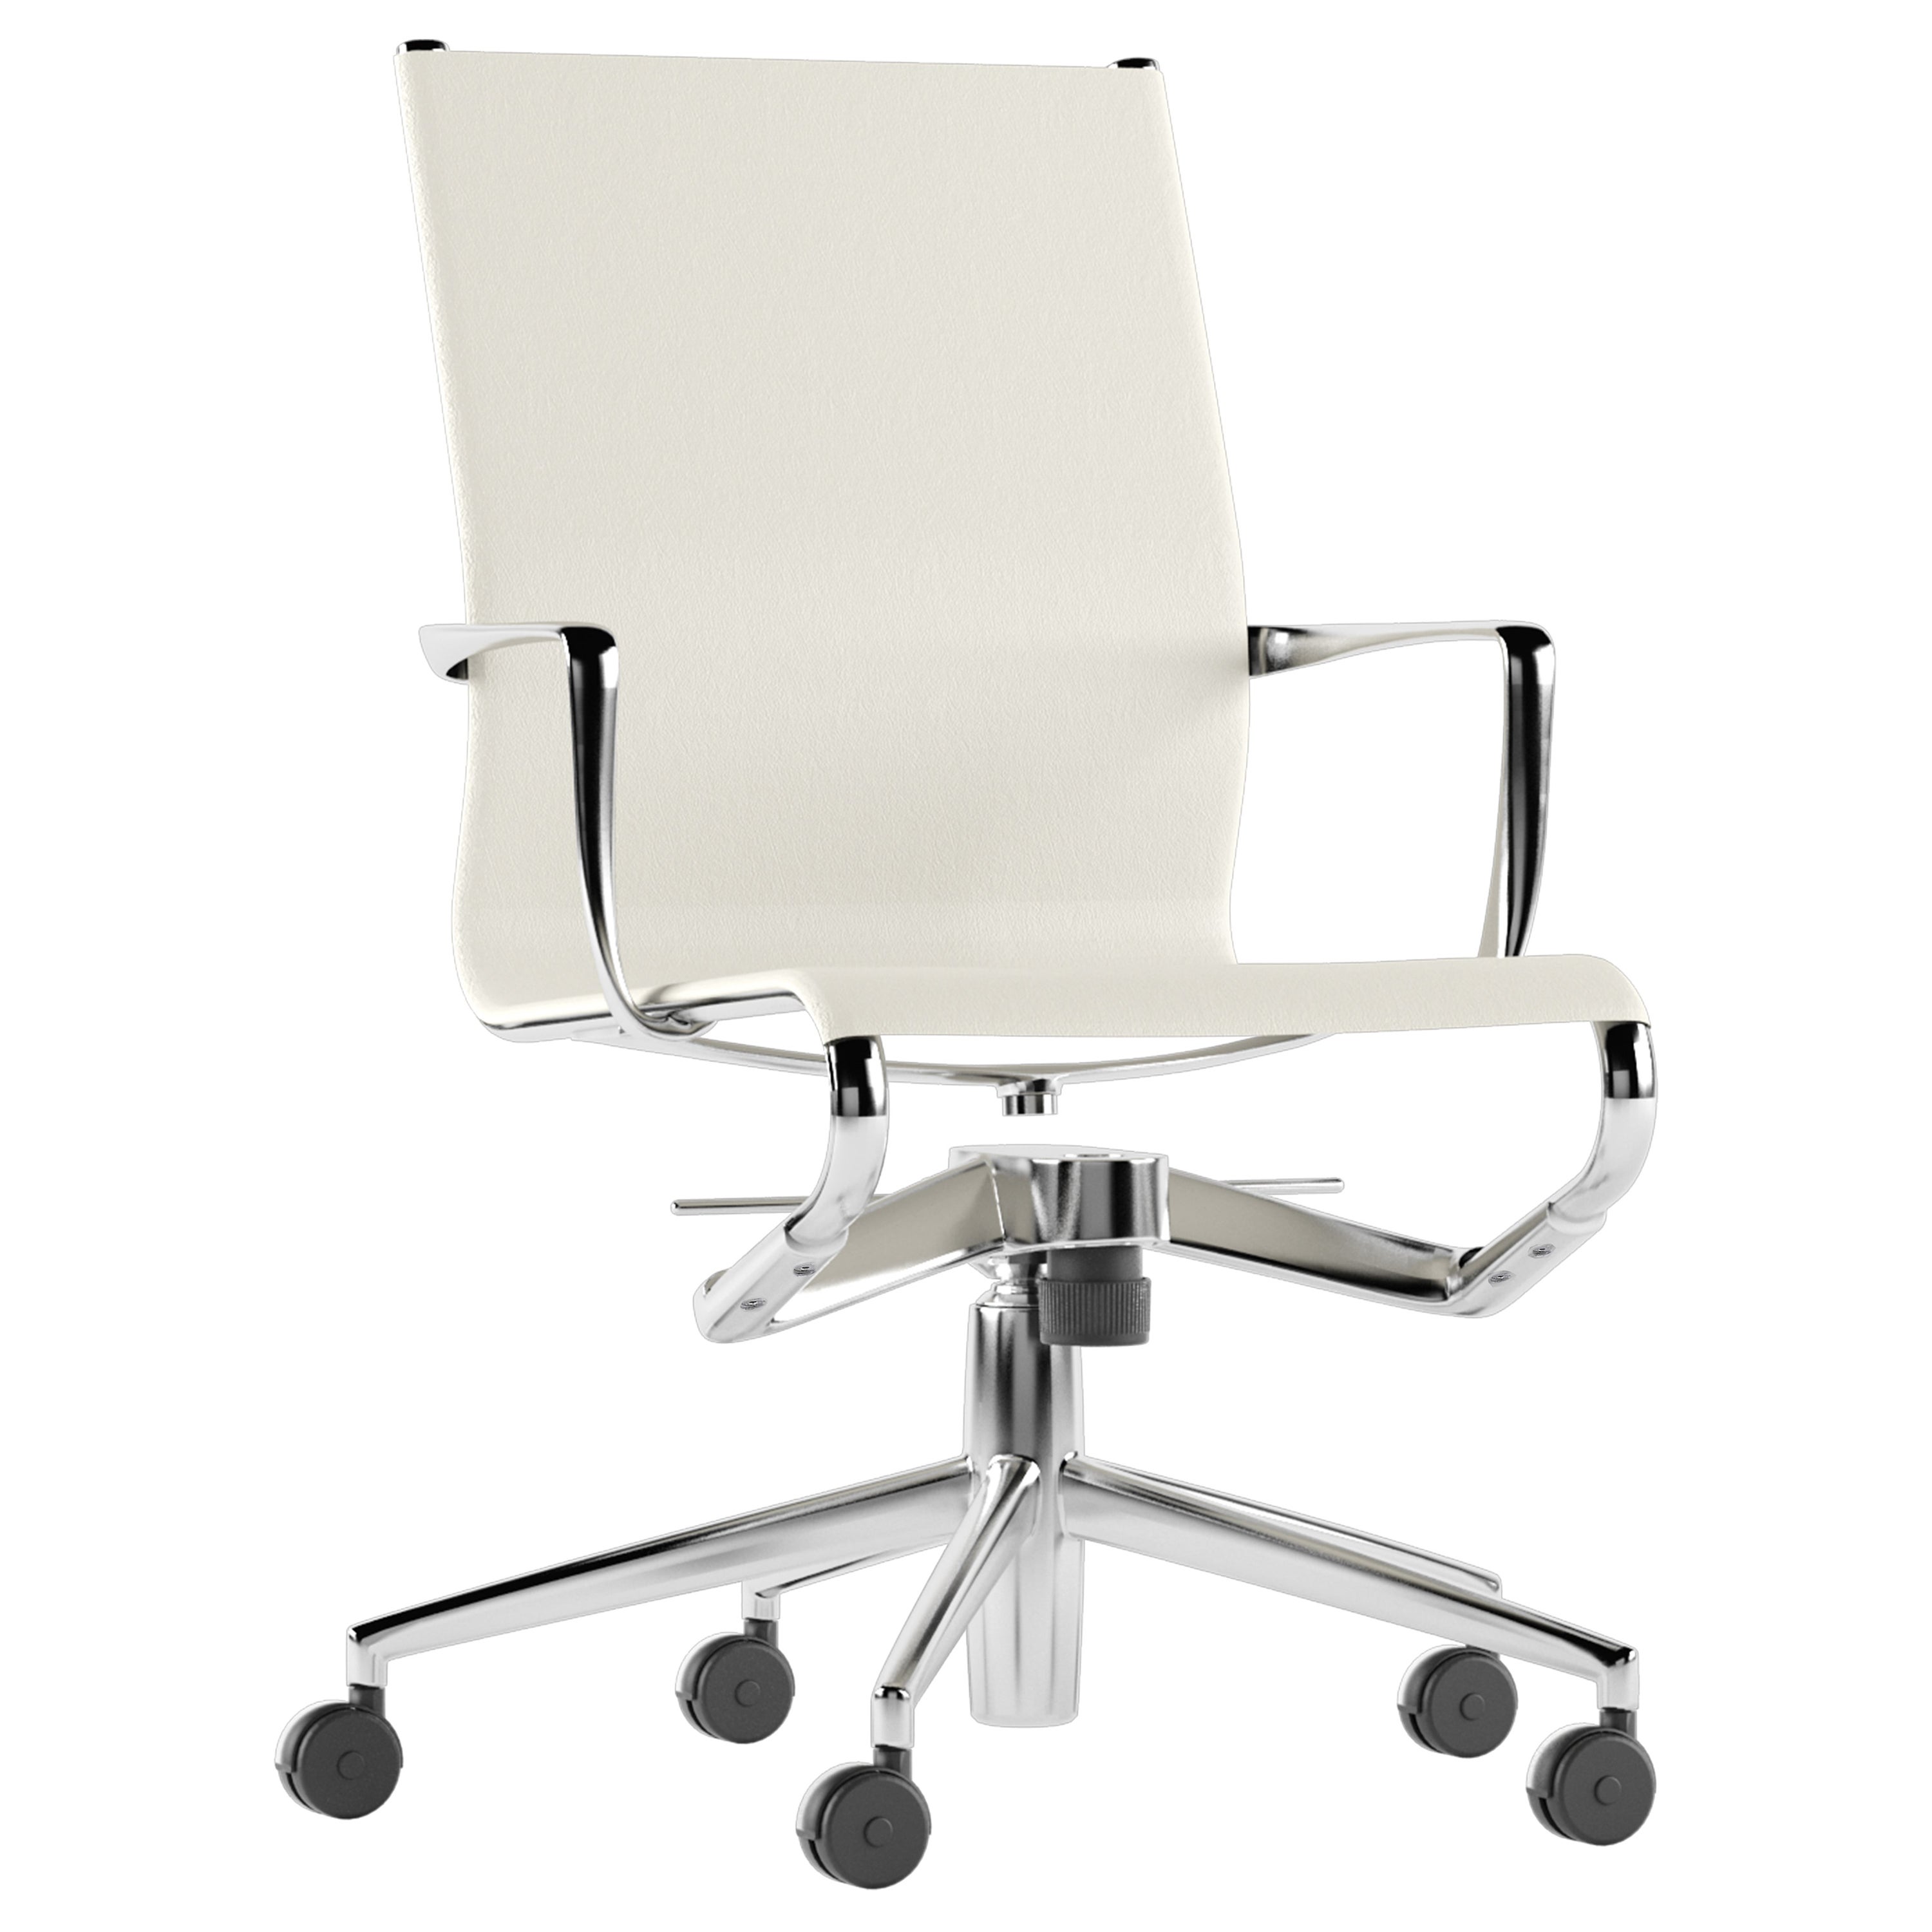 Alias 445 Rollingframe+ Tilt 47 Chair in White with Chromed Aluminum Frame